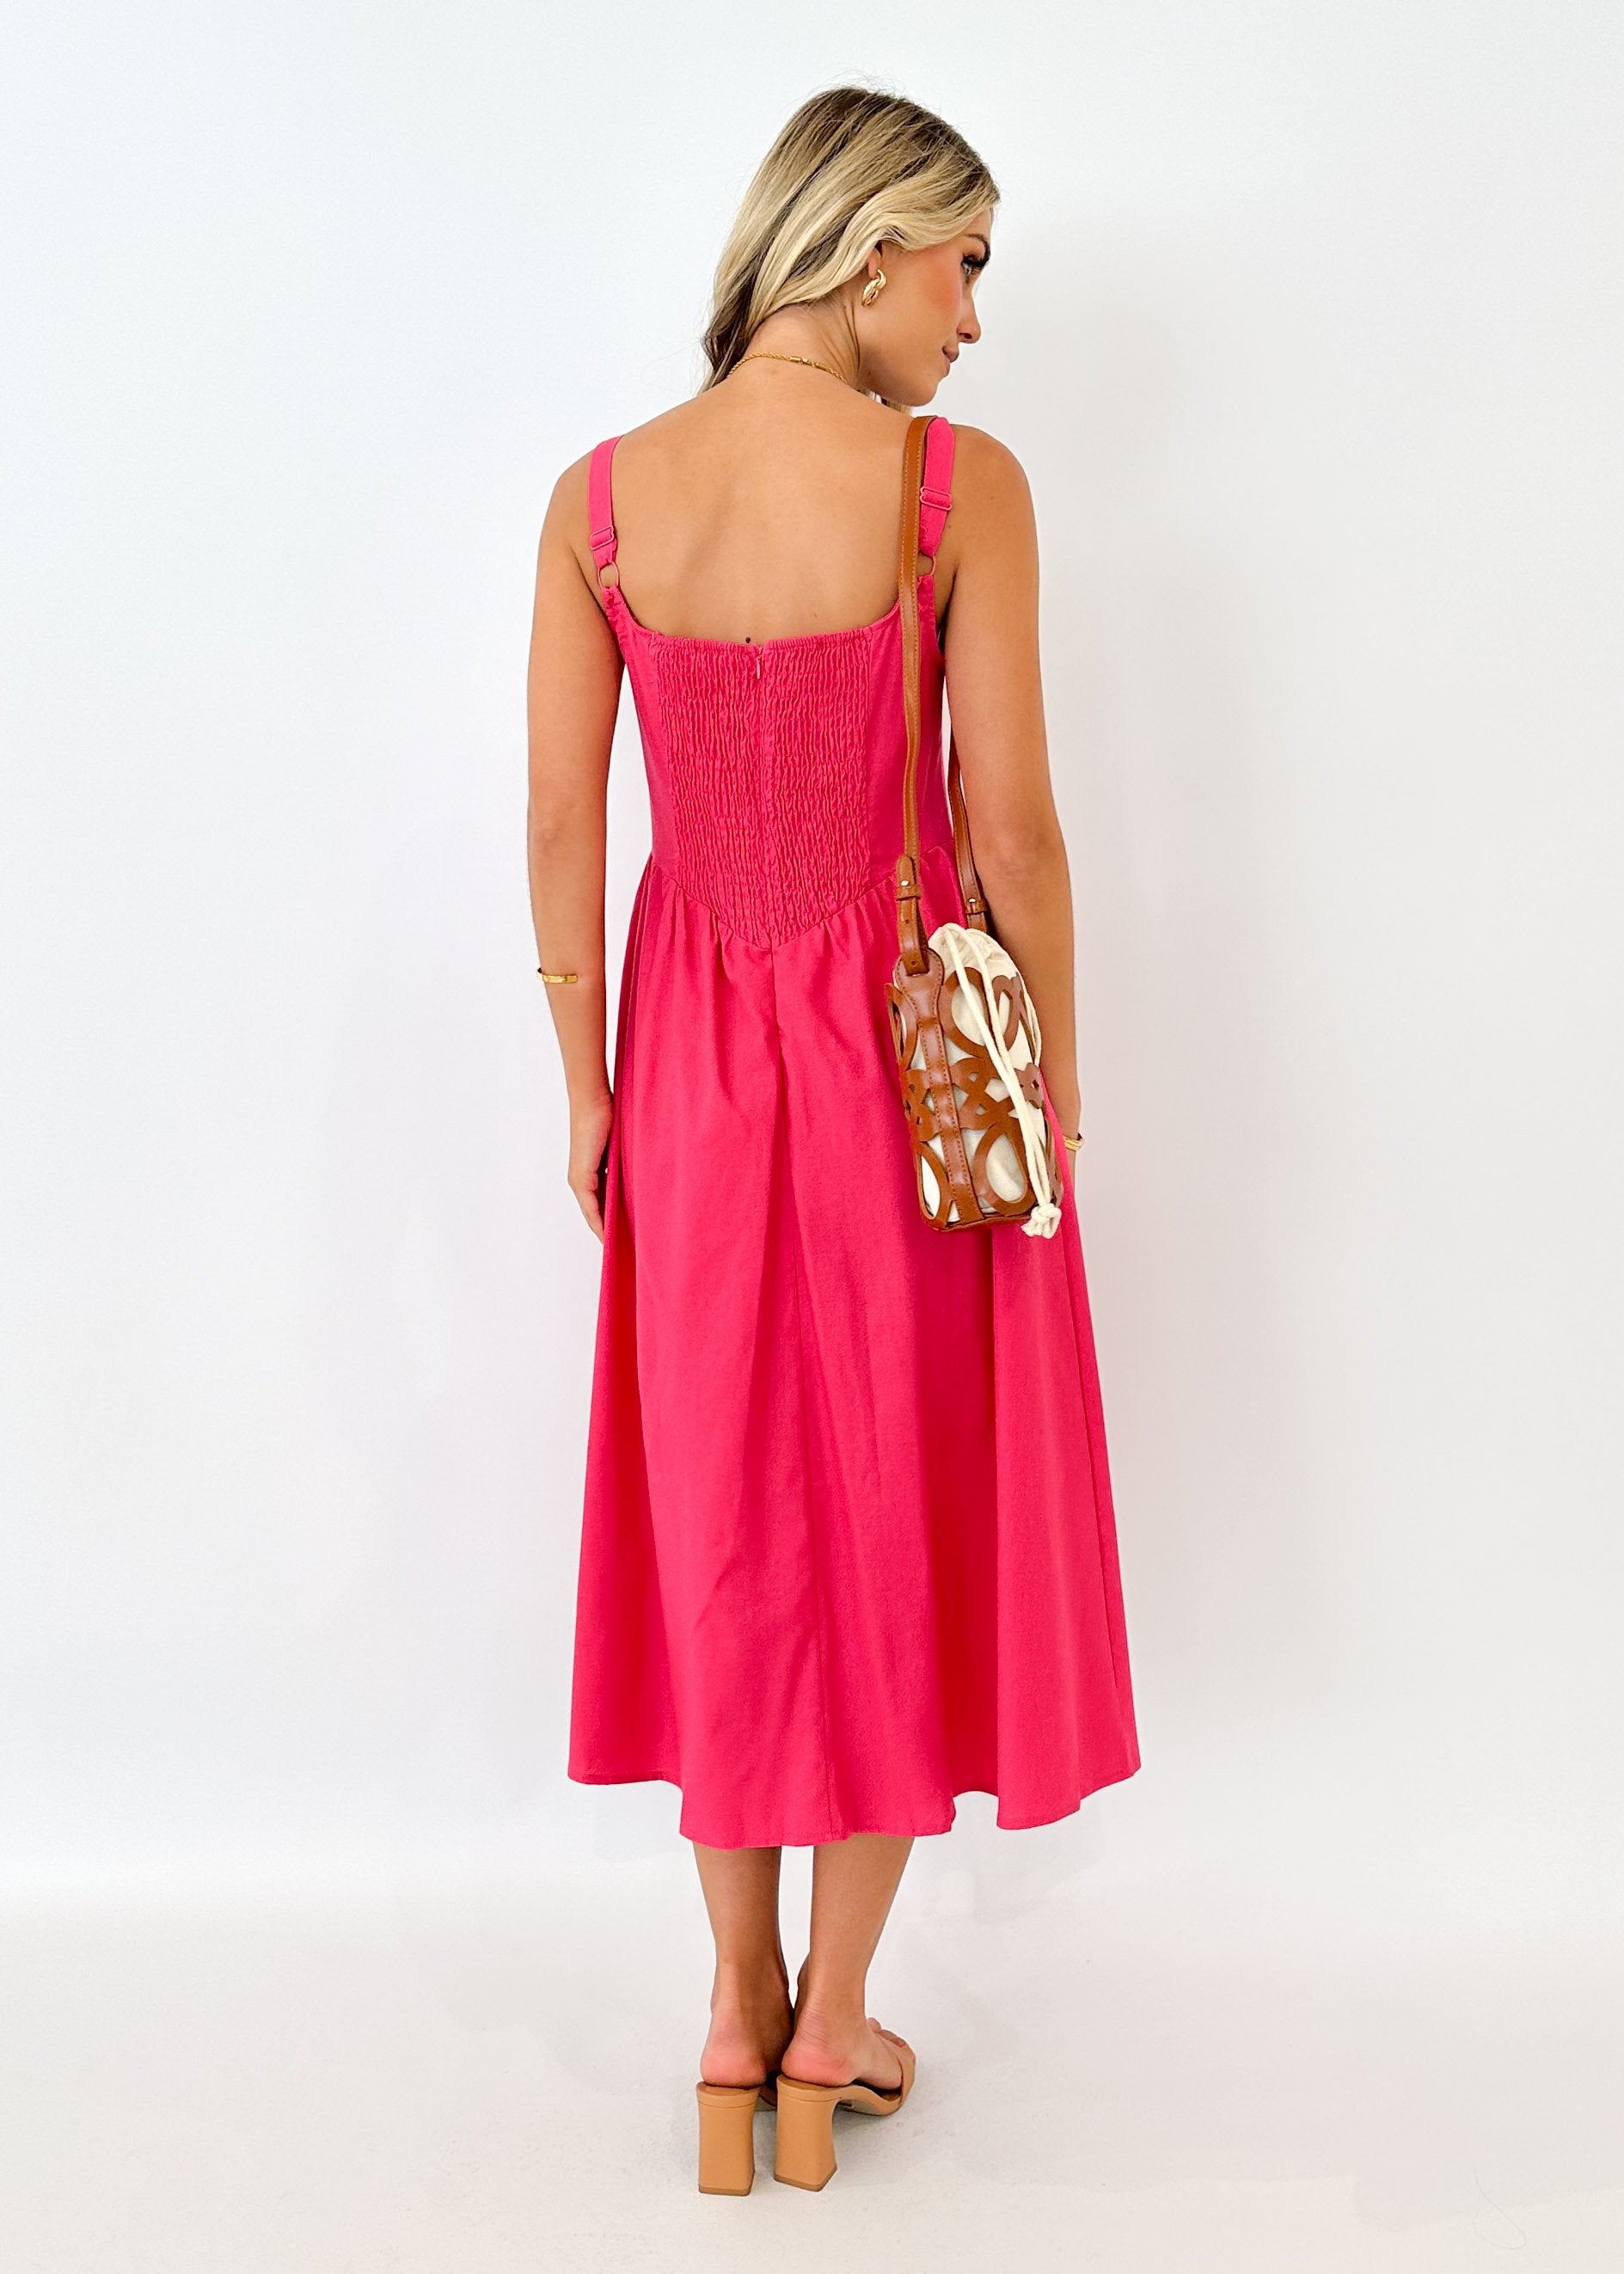 Bayso Maxi Dress - Hot Pink